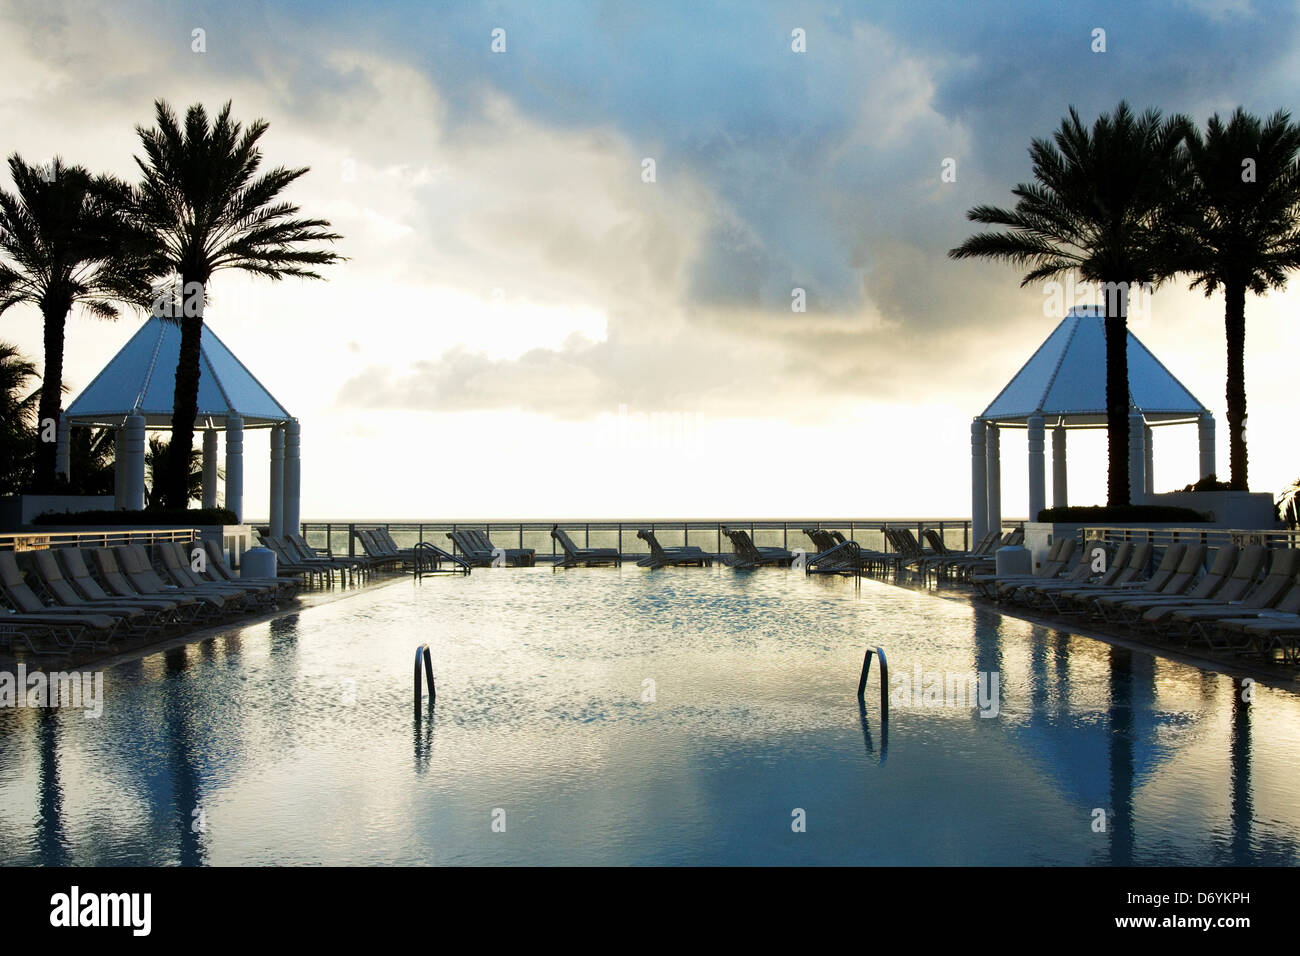 Swimming pool at Diplomat Hotel, Hollywood, Broward County, Florida, USA Stock Photo